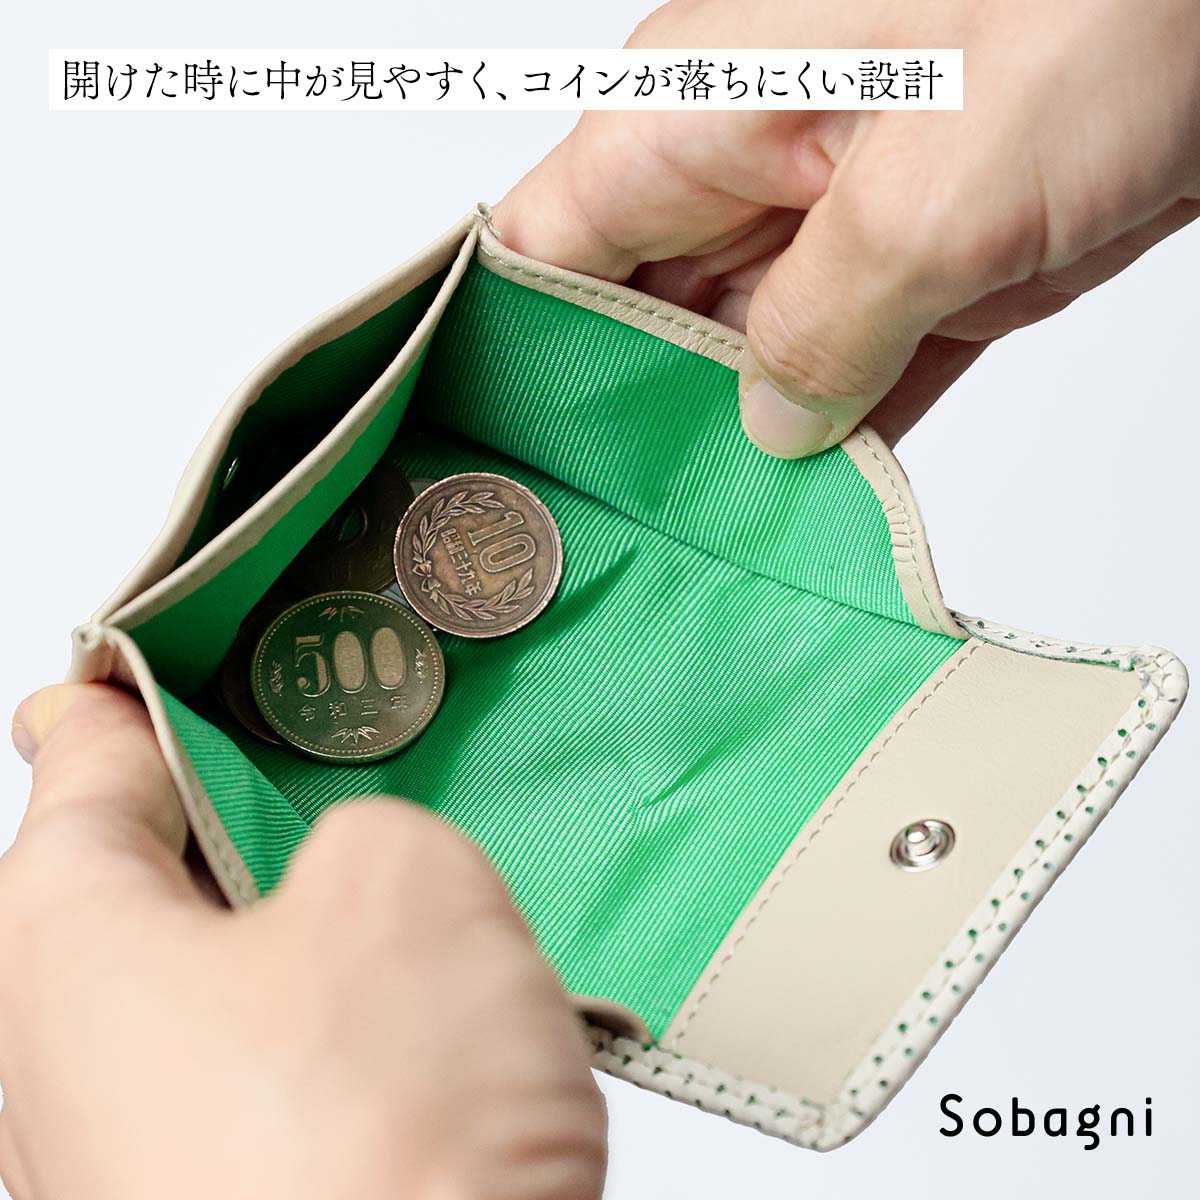 渋い深緑色の長財布です！小銭入れもあります